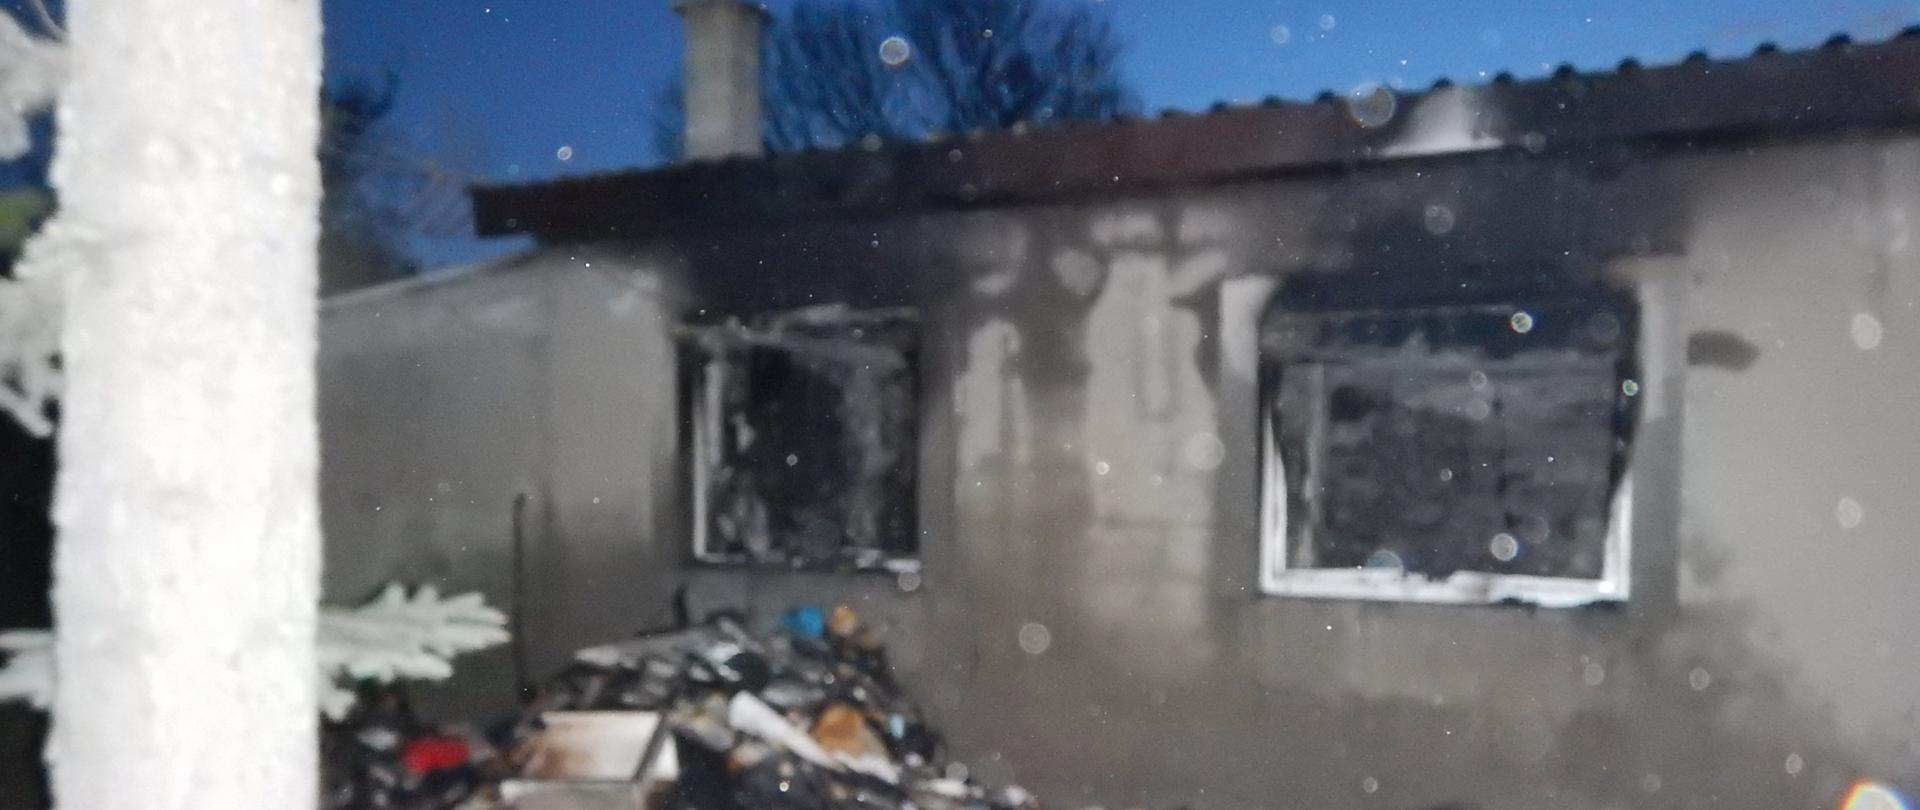 Zdjęcie przedstawia spalony budynek mieszkalny